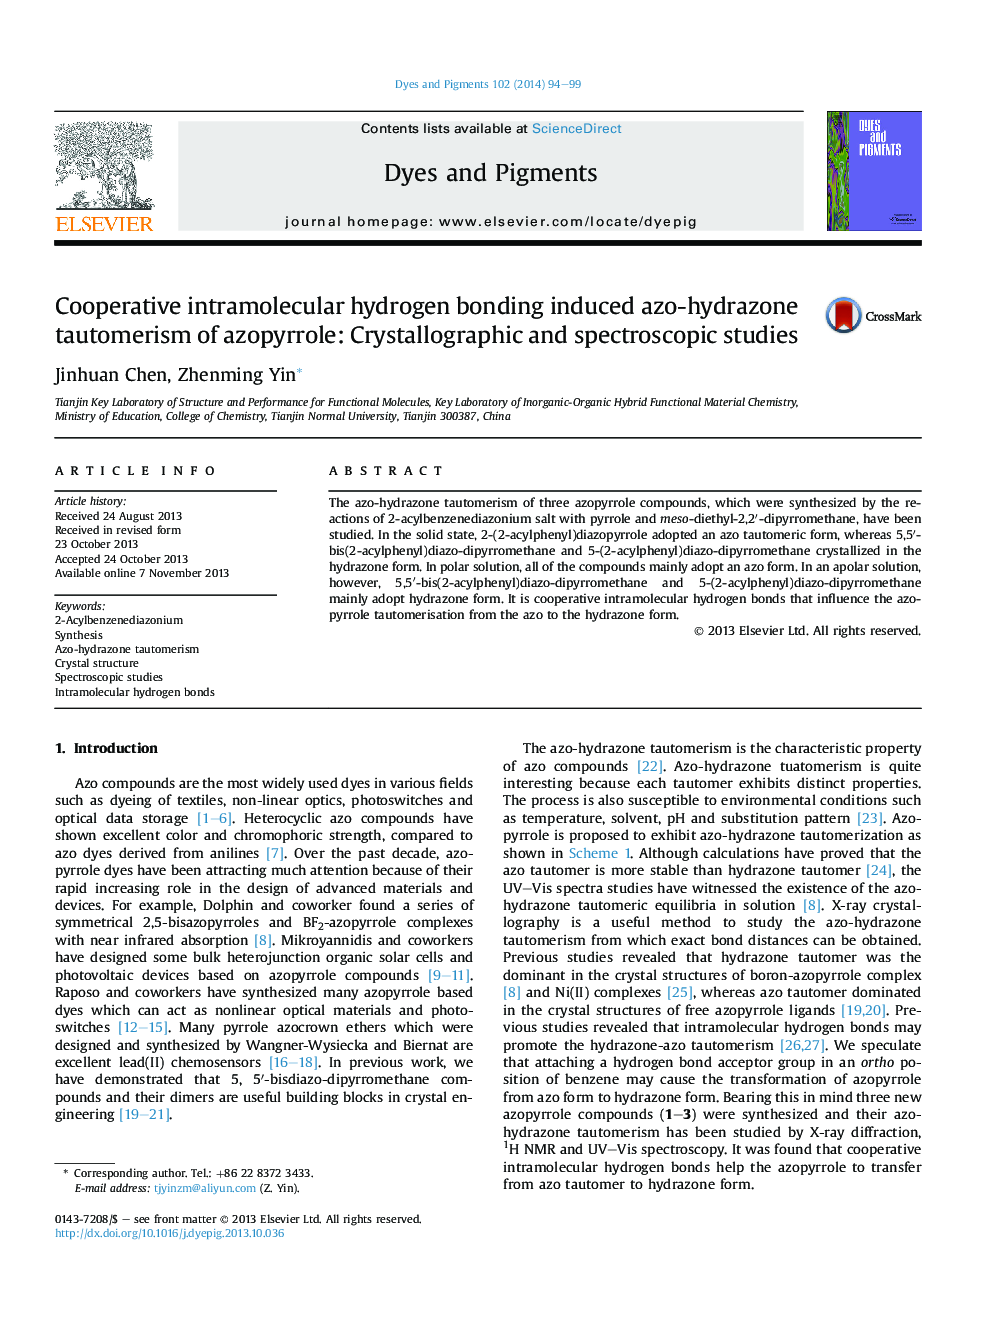 پیوند هیدروژنی درون مولکولی تعاونی باعث ایجاد تودومریزی آزوپریلو آزو هیدرازن می شود: مطالعات کریستالوگرافی و اسپکتروسکوپی 